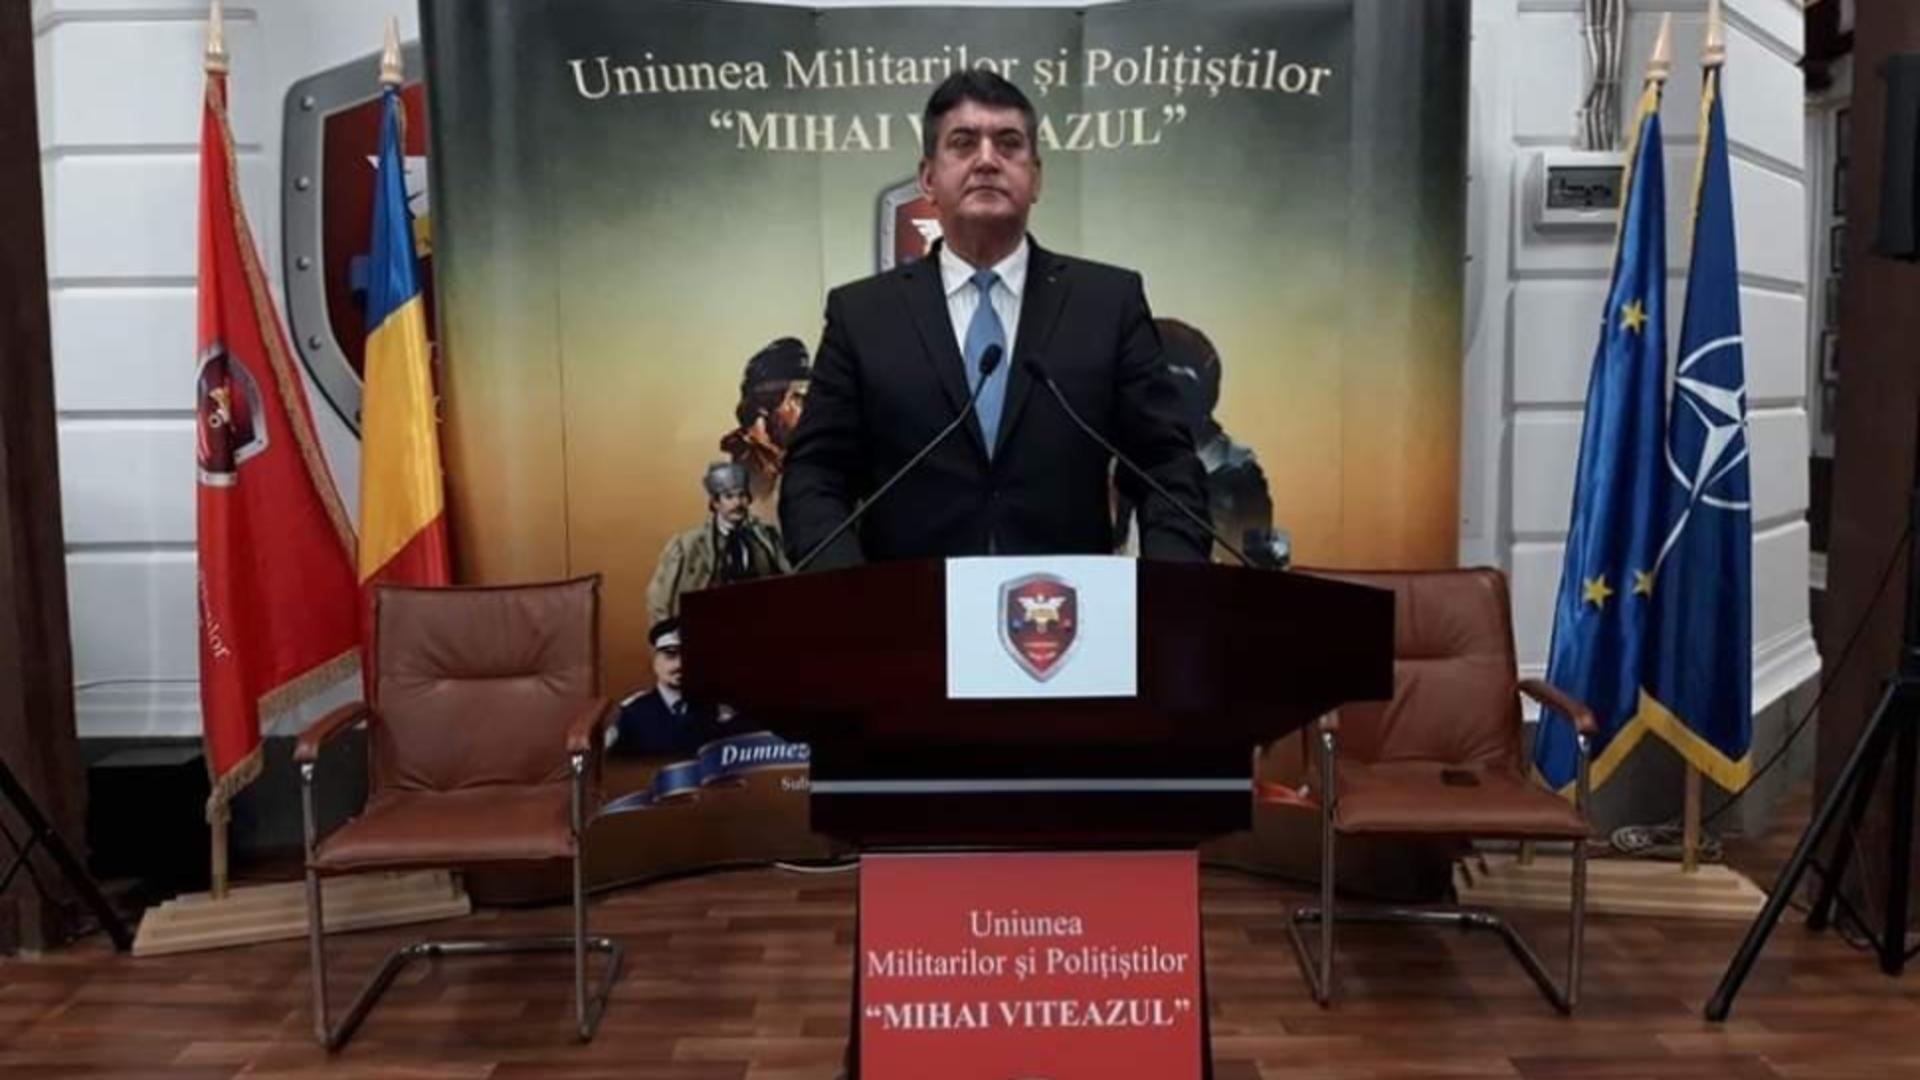 Uniunea Militarilor și Polițiștilor “Mihai Viteazul”, condusă de Gabriel Oprea, fost vicepremier pentru securitatea națională